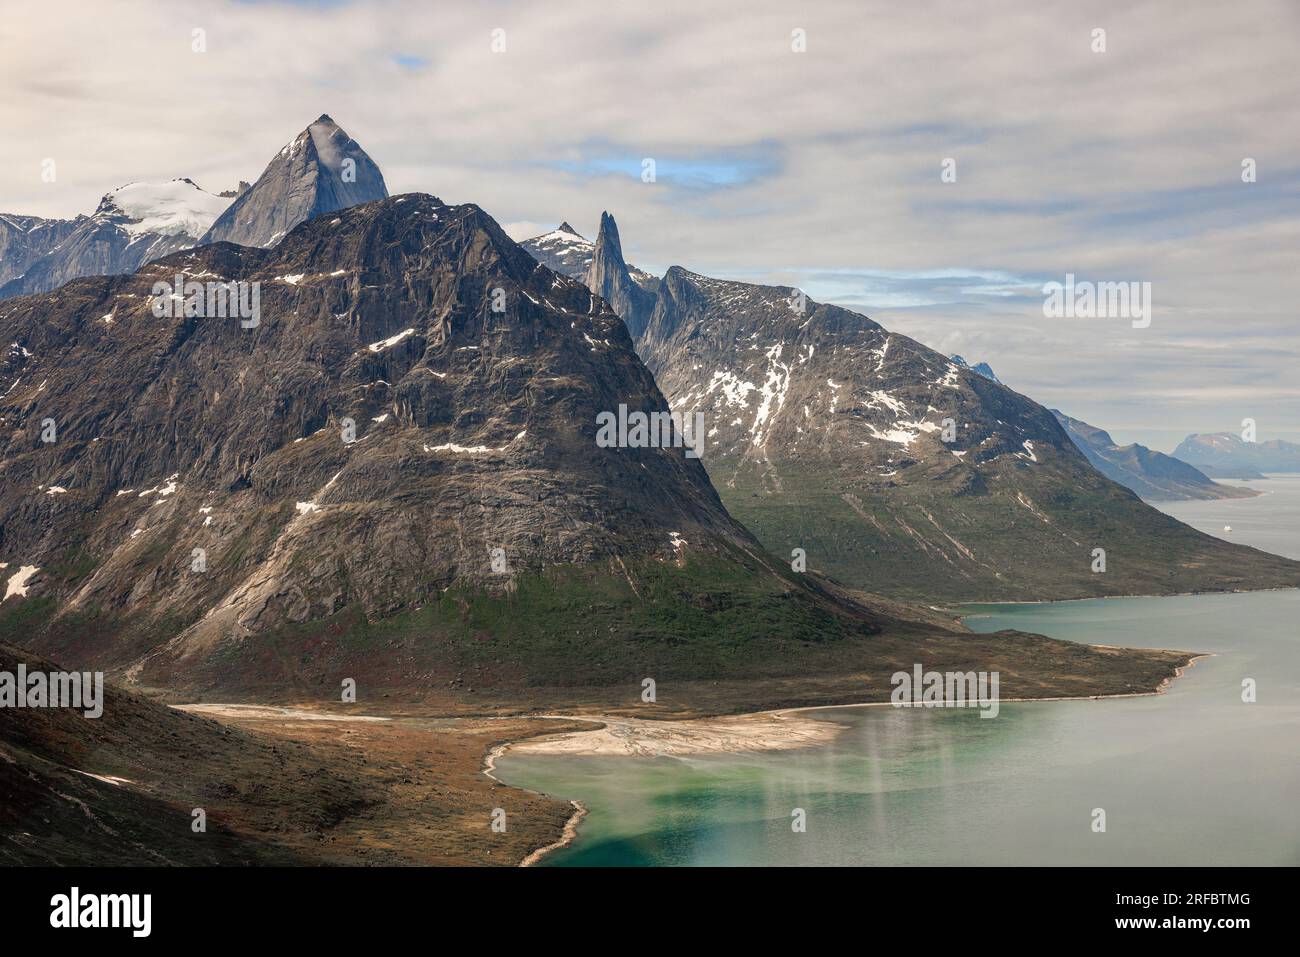 foto aerea di magnifiche montagne rocciose con lati ripidi che scendono giù nell'acqua verde blu del fiordo di tasermiut in groenlandia Foto Stock